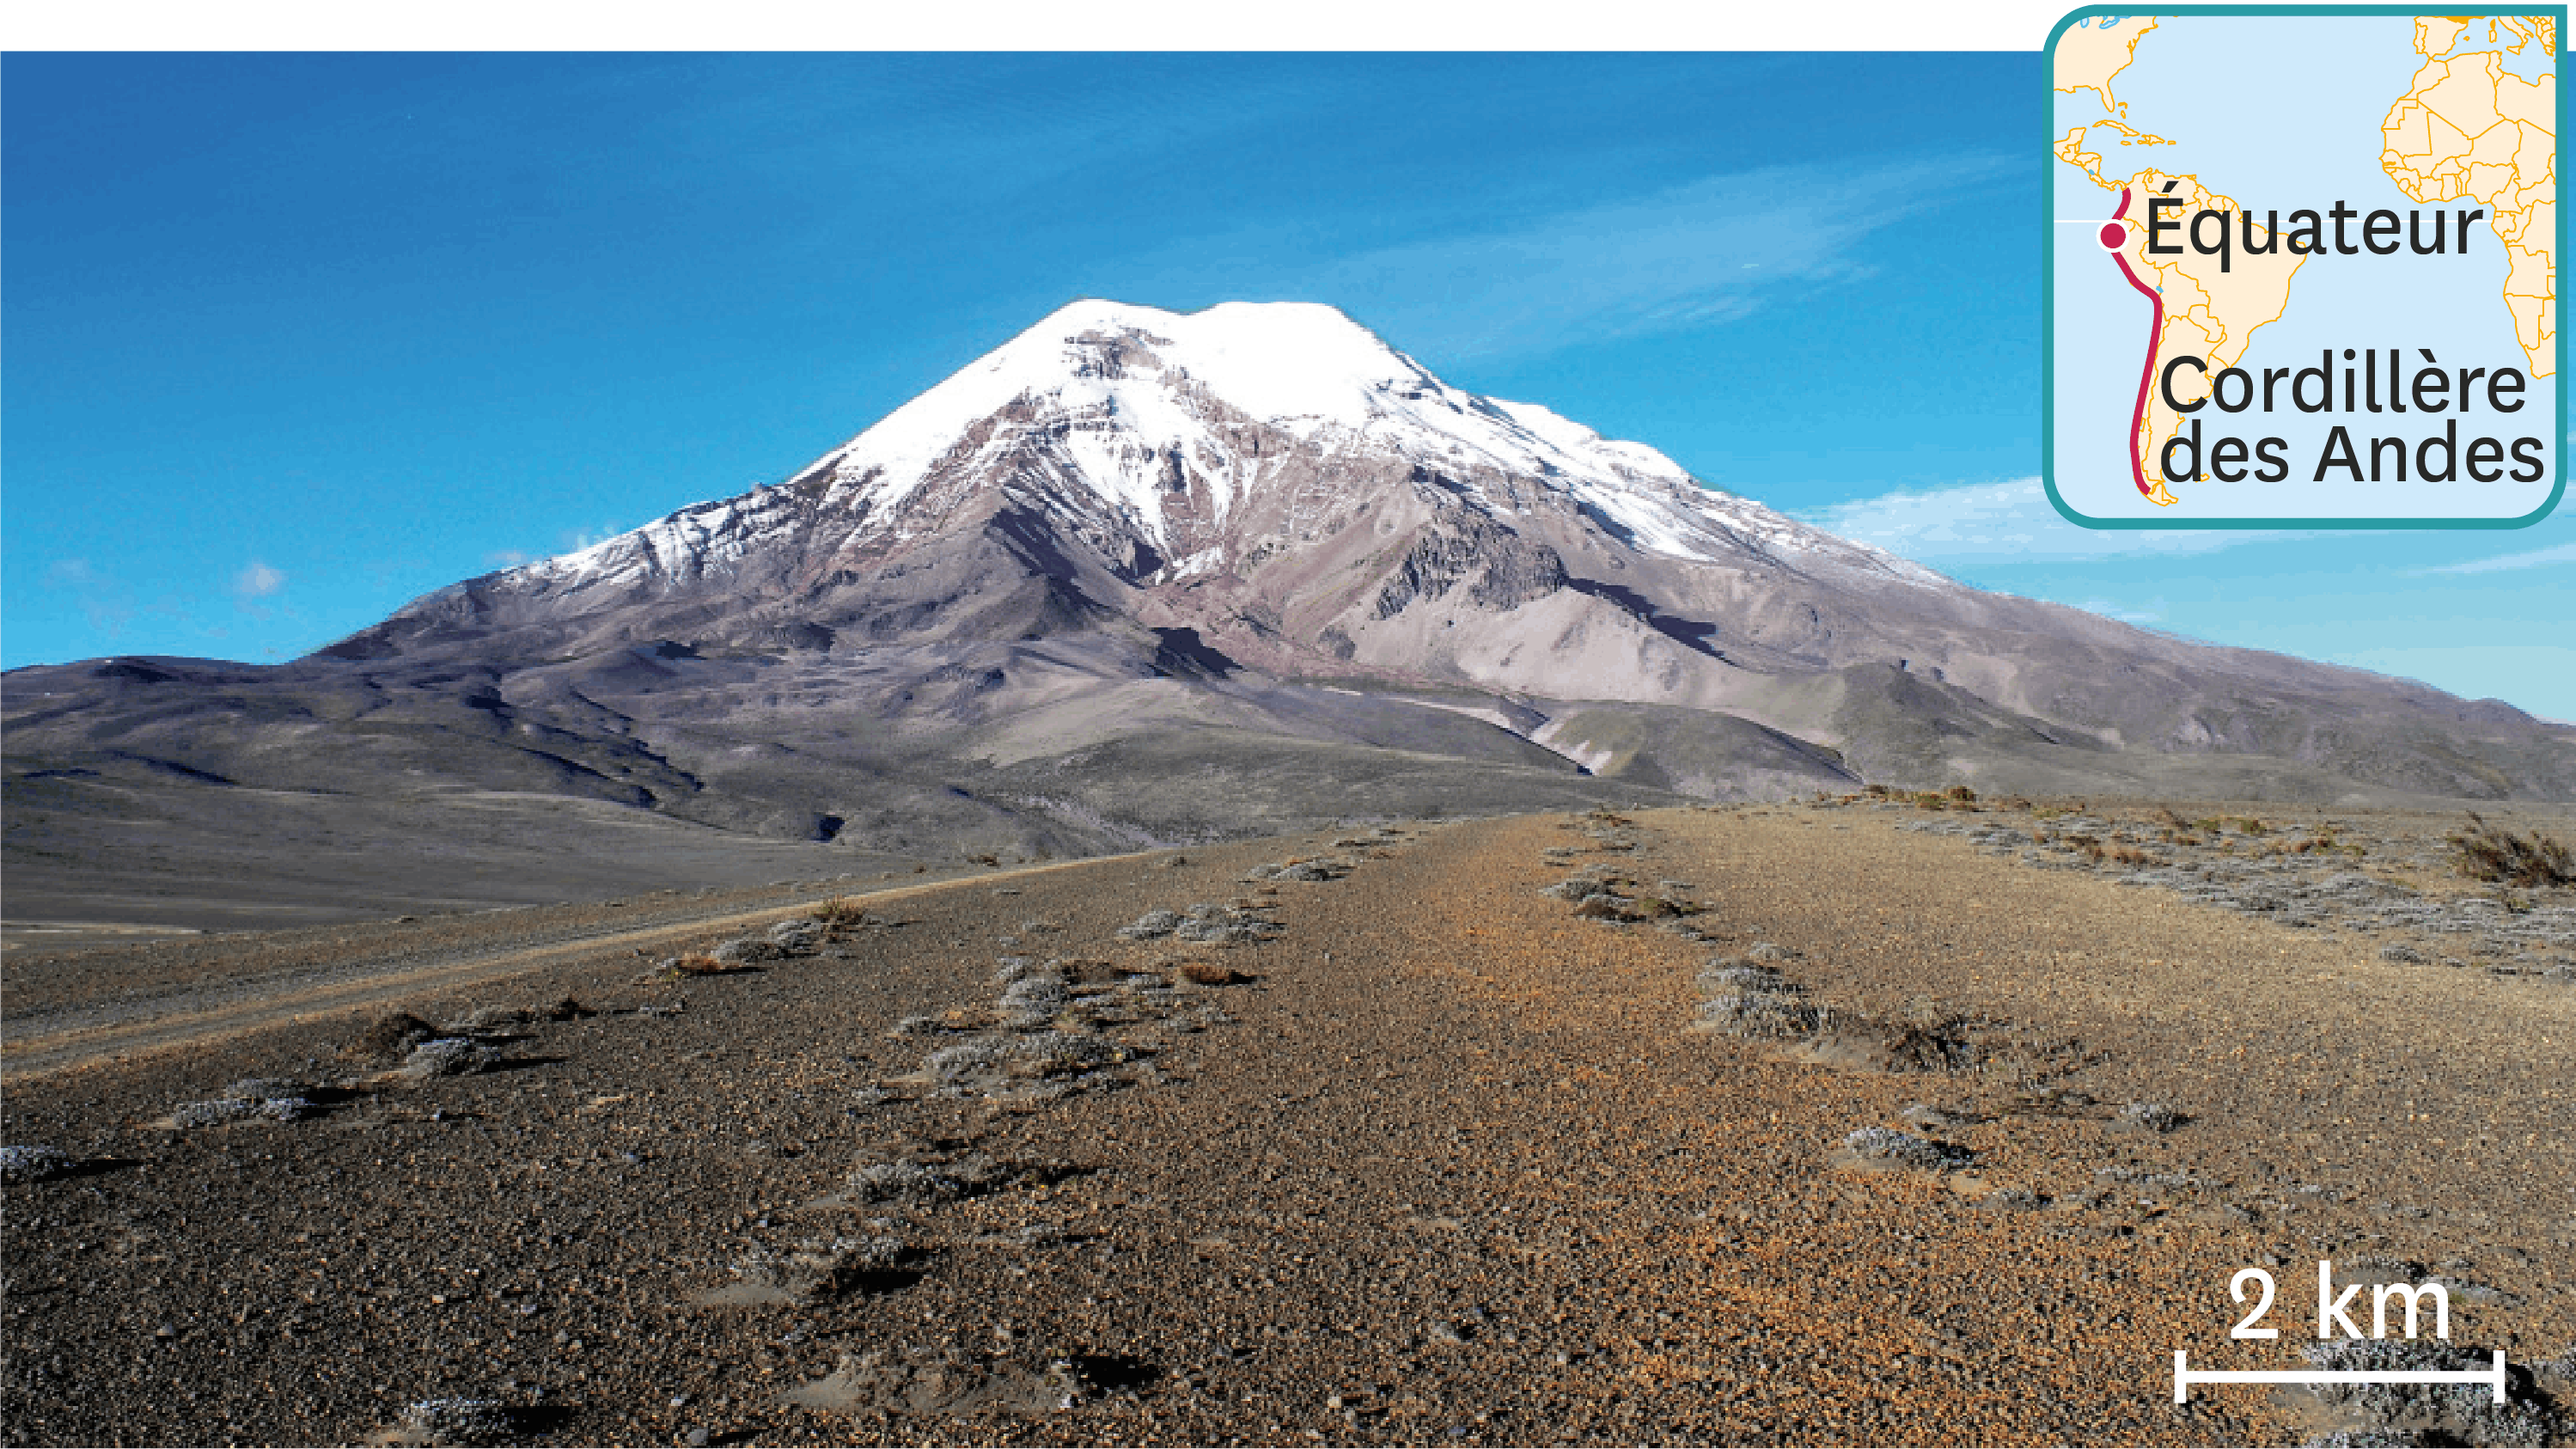 <stamp theme='svt-green1'>Doc. 5</stamp> Une photographie de la surface de la Terre dans la cordillère des Andes (Équateur).